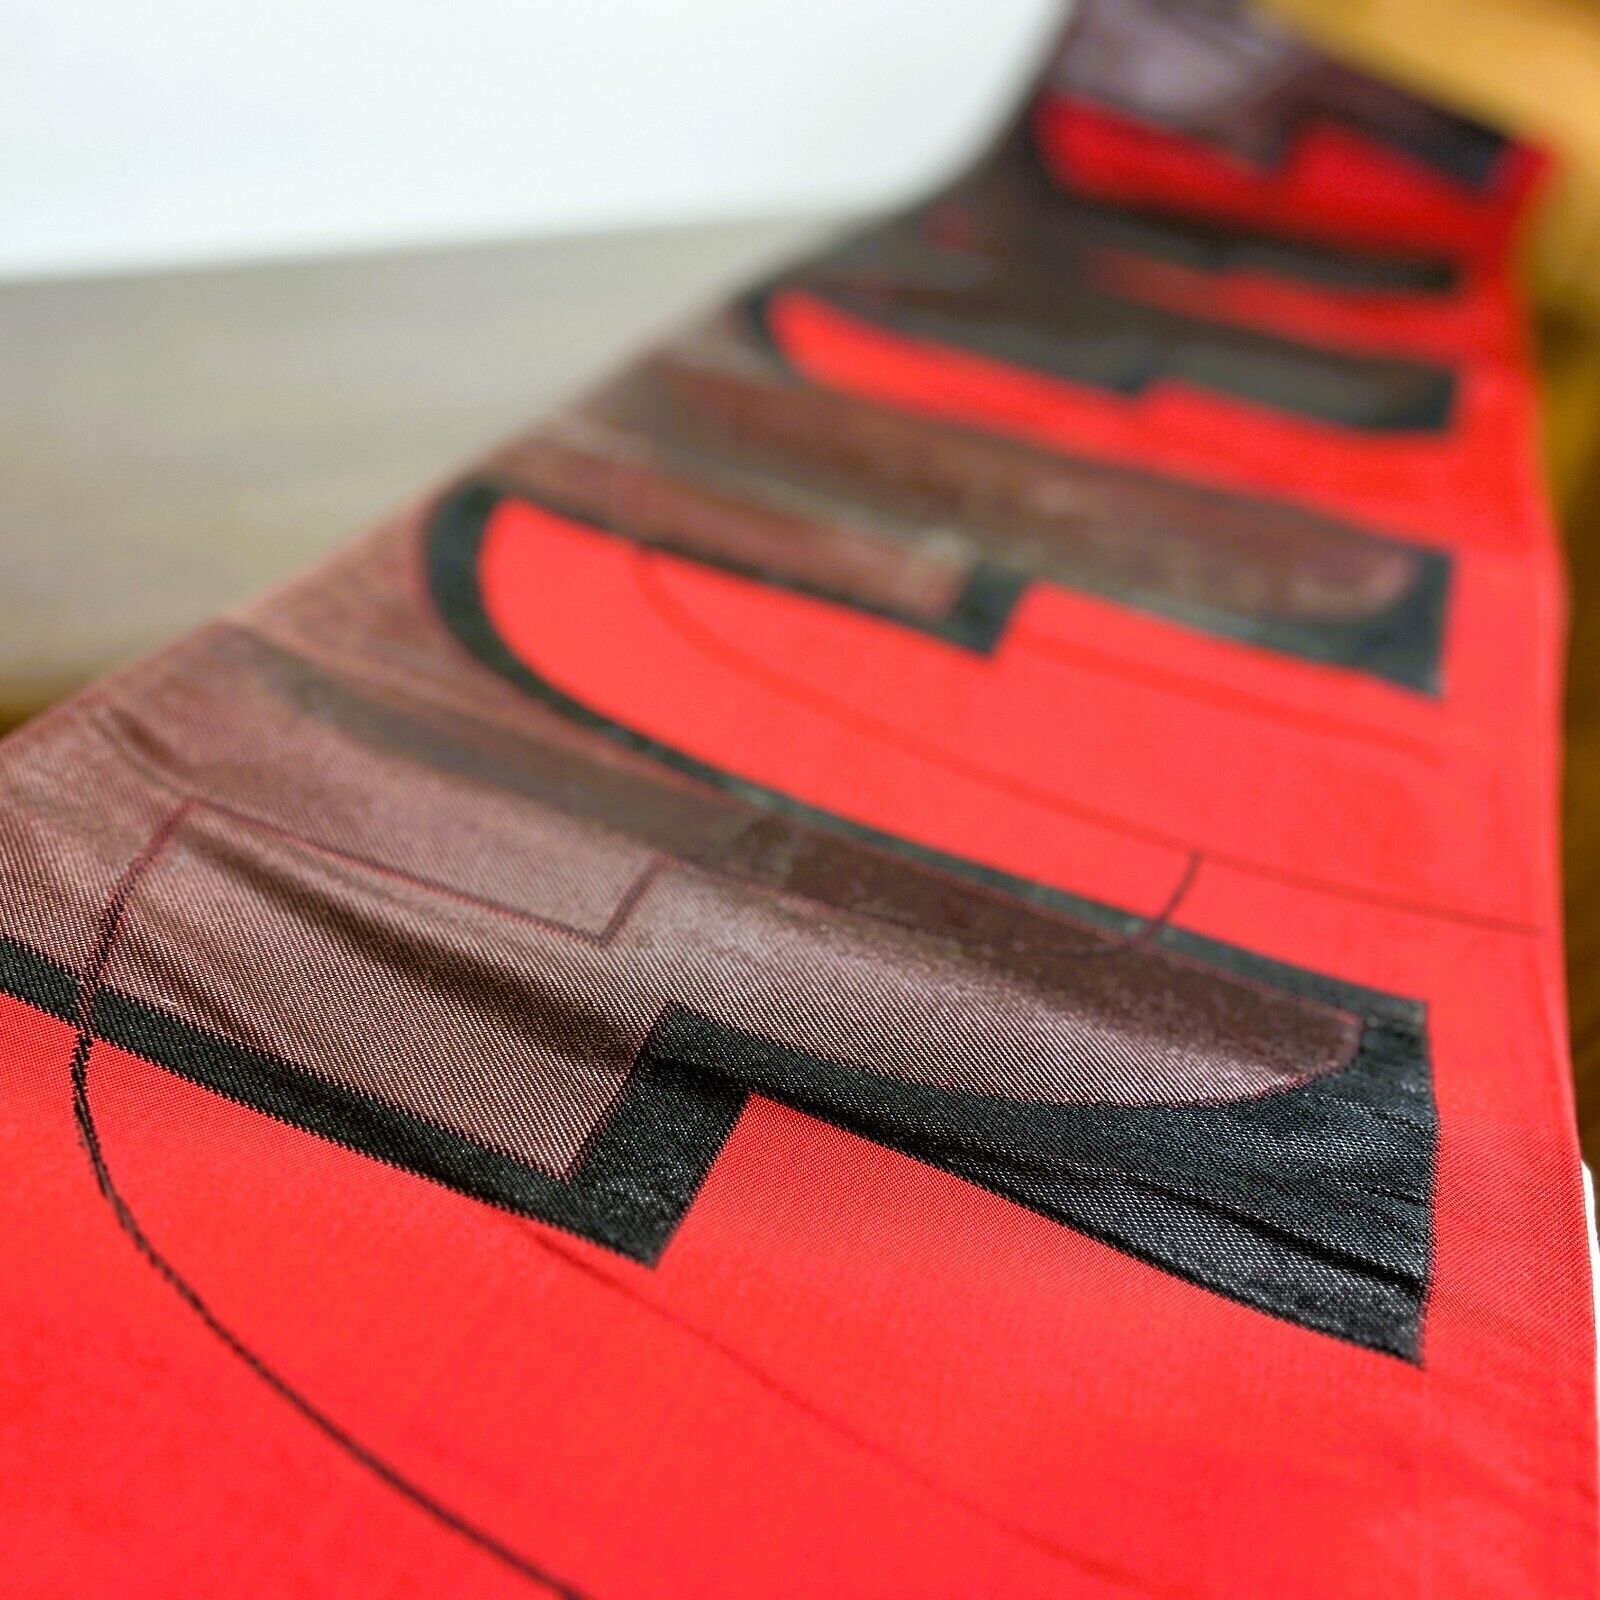 【Excellent】vintage japanese obi belt、fukuro obi, obisash, red &black,